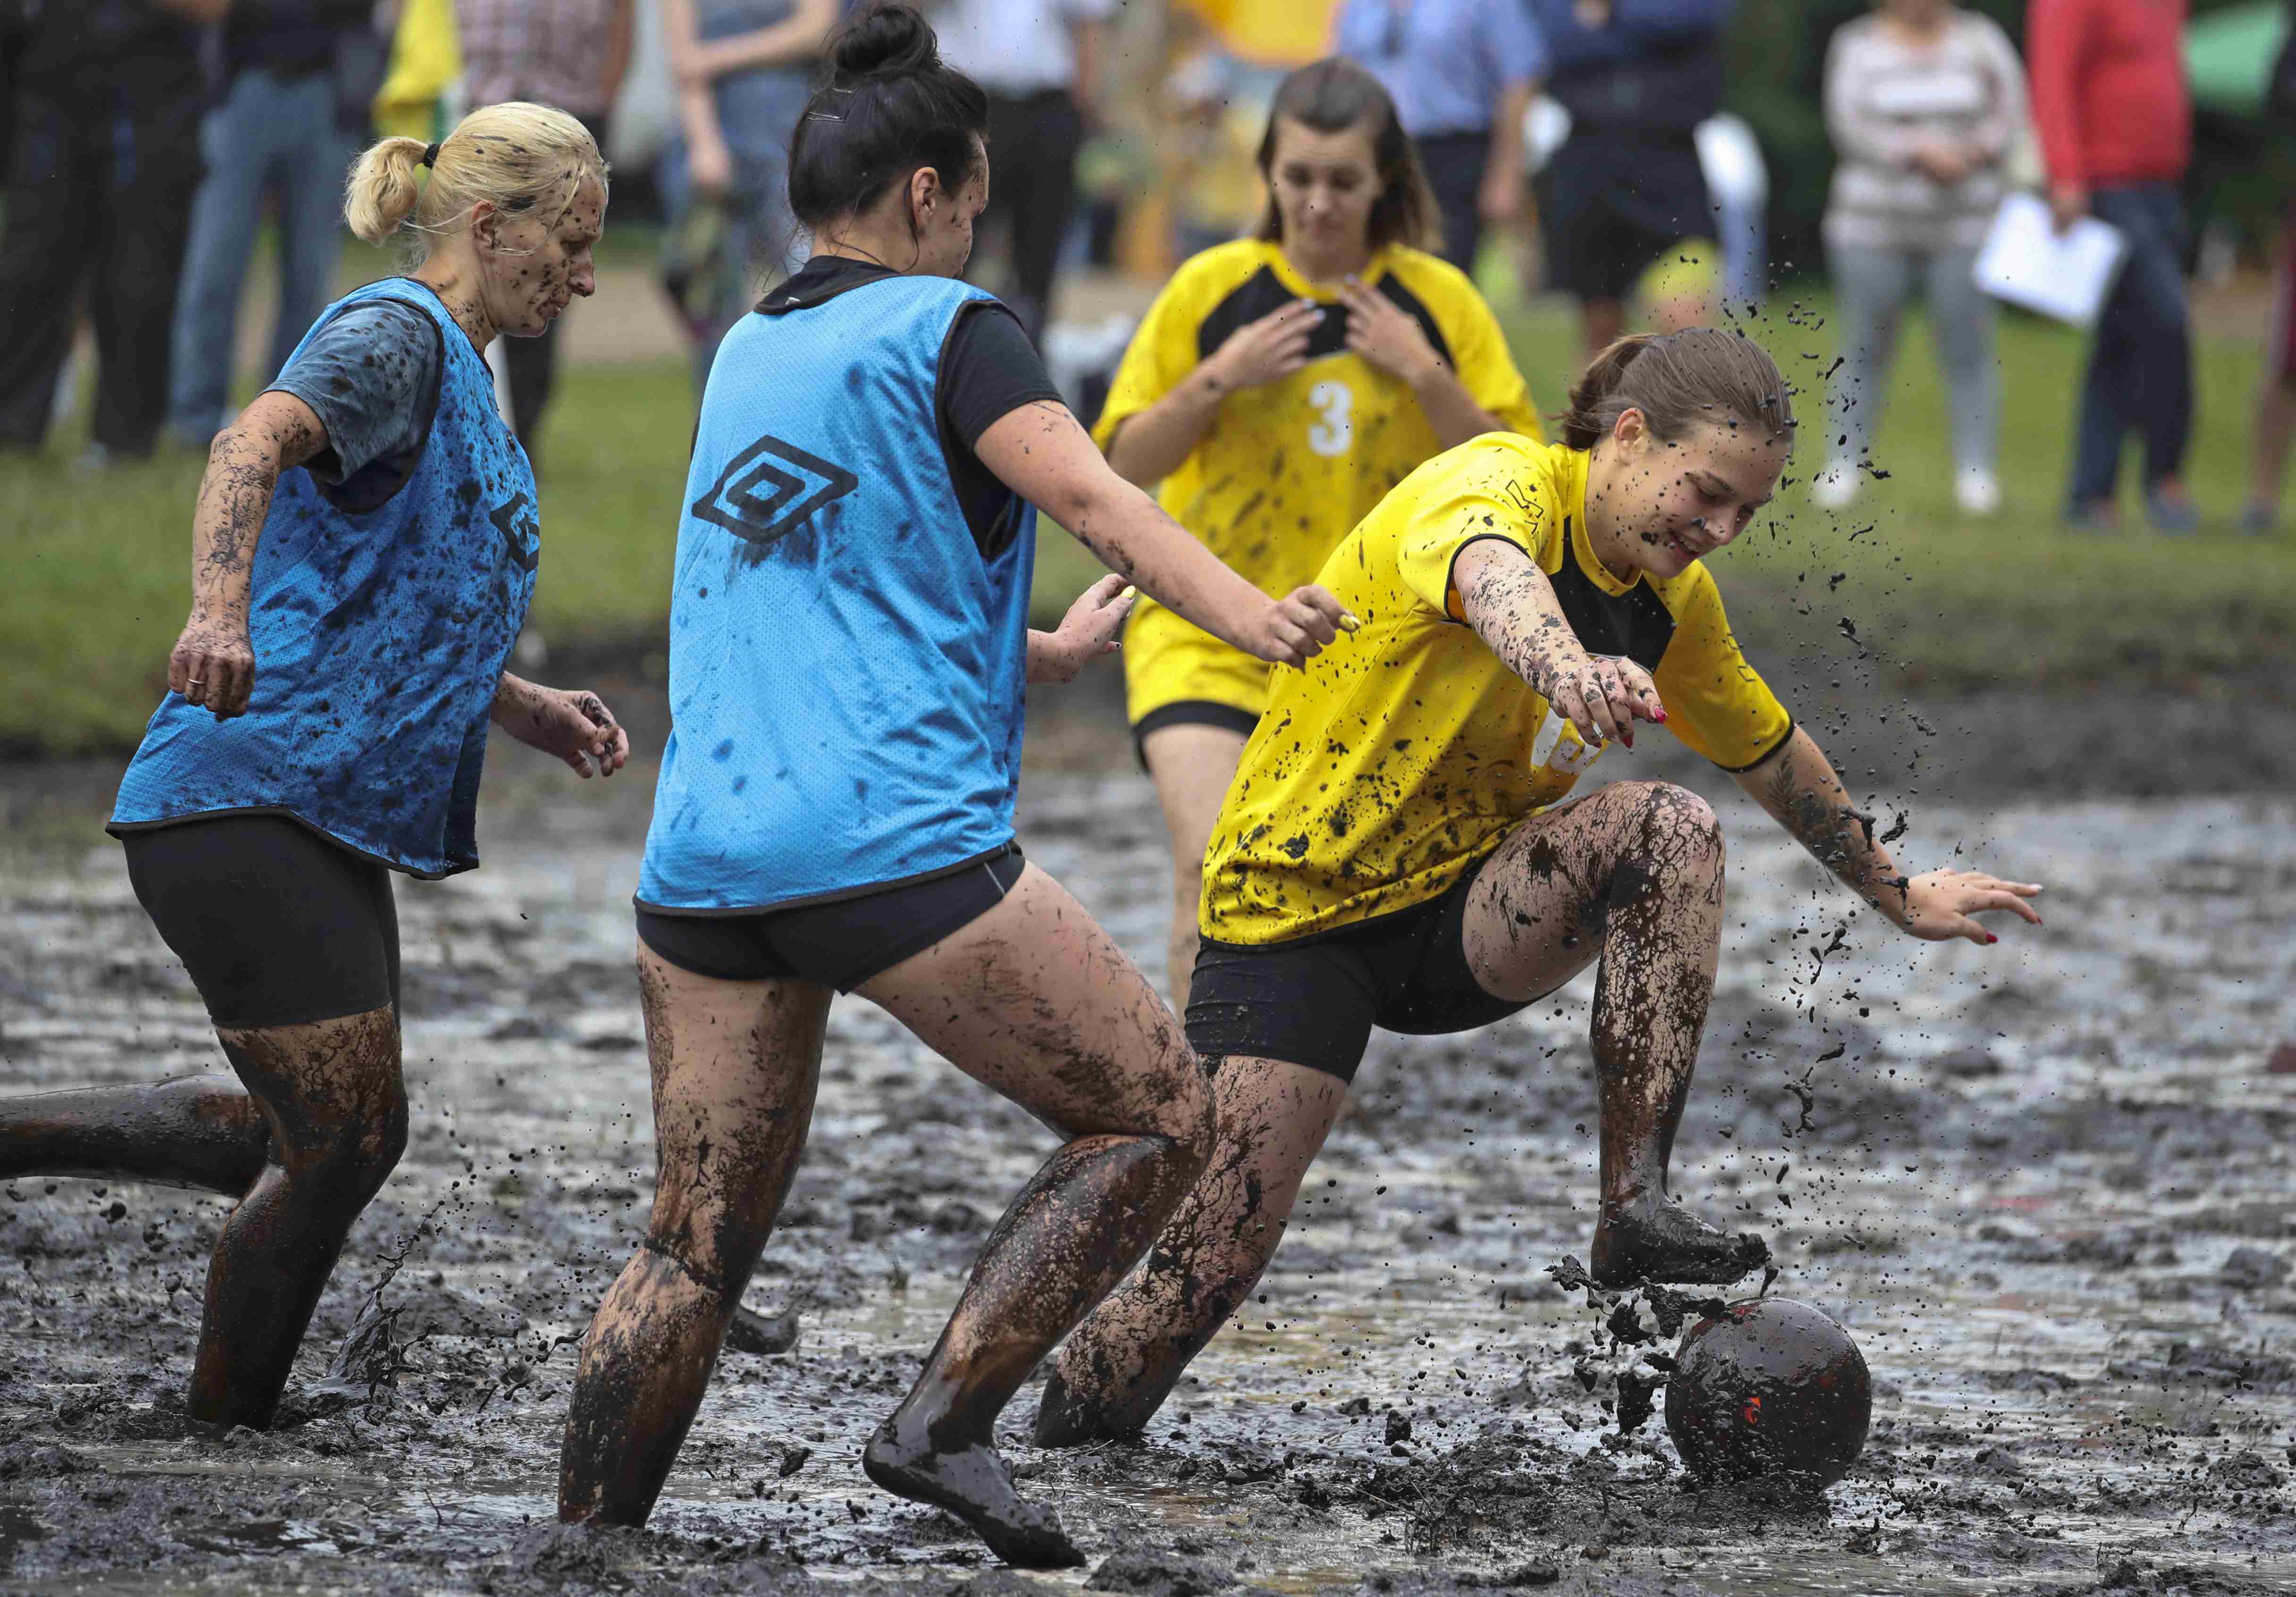 白俄罗斯举行趣味沼泽足球赛 满身泥浆欢乐无比